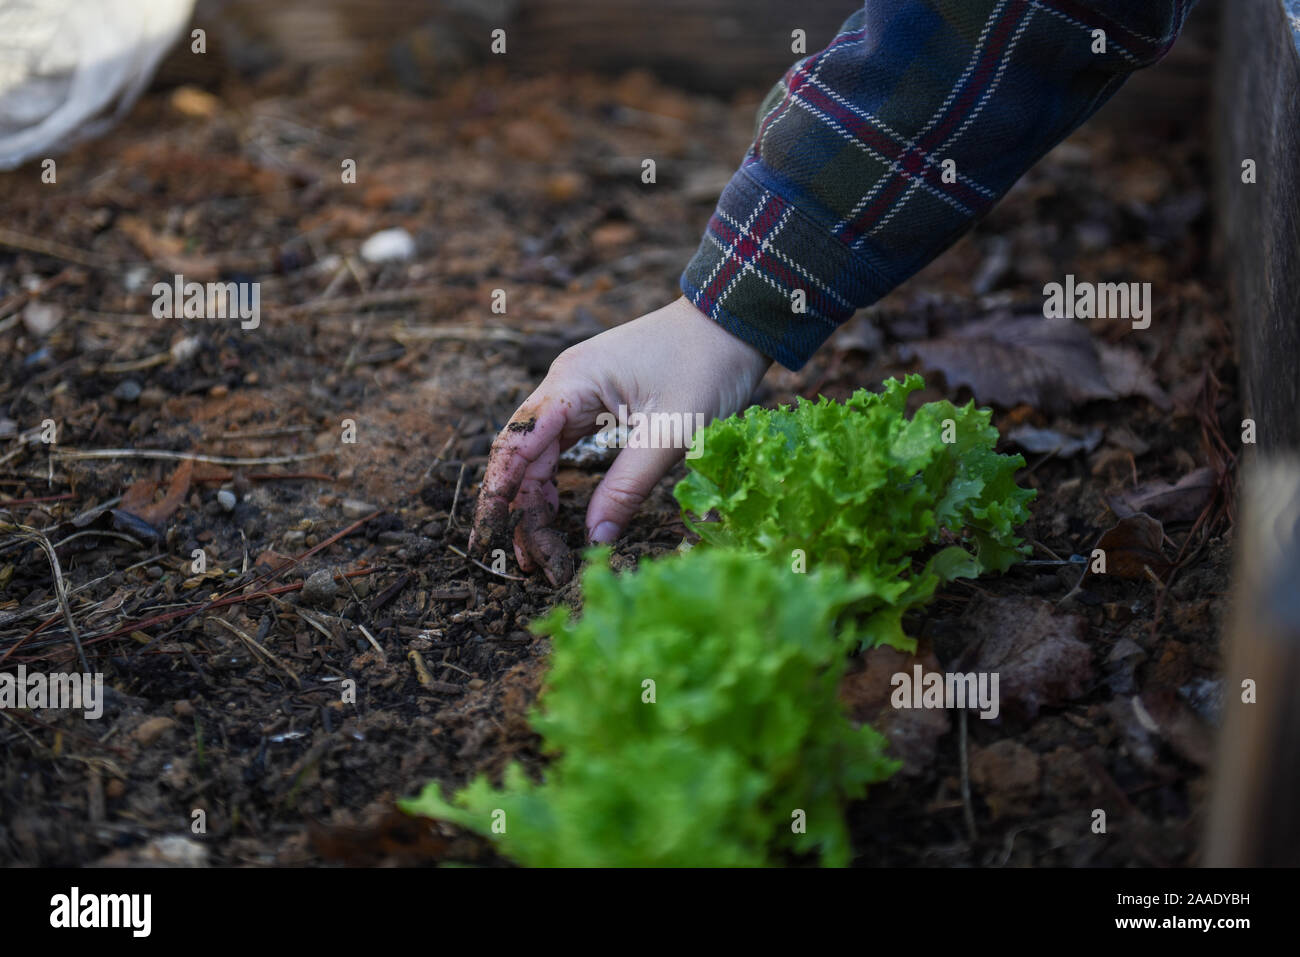 Jardinage d'hiver photos dans un jardin local axé sur la durabilité et la sécurité alimentaire dans la communauté. Banque D'Images